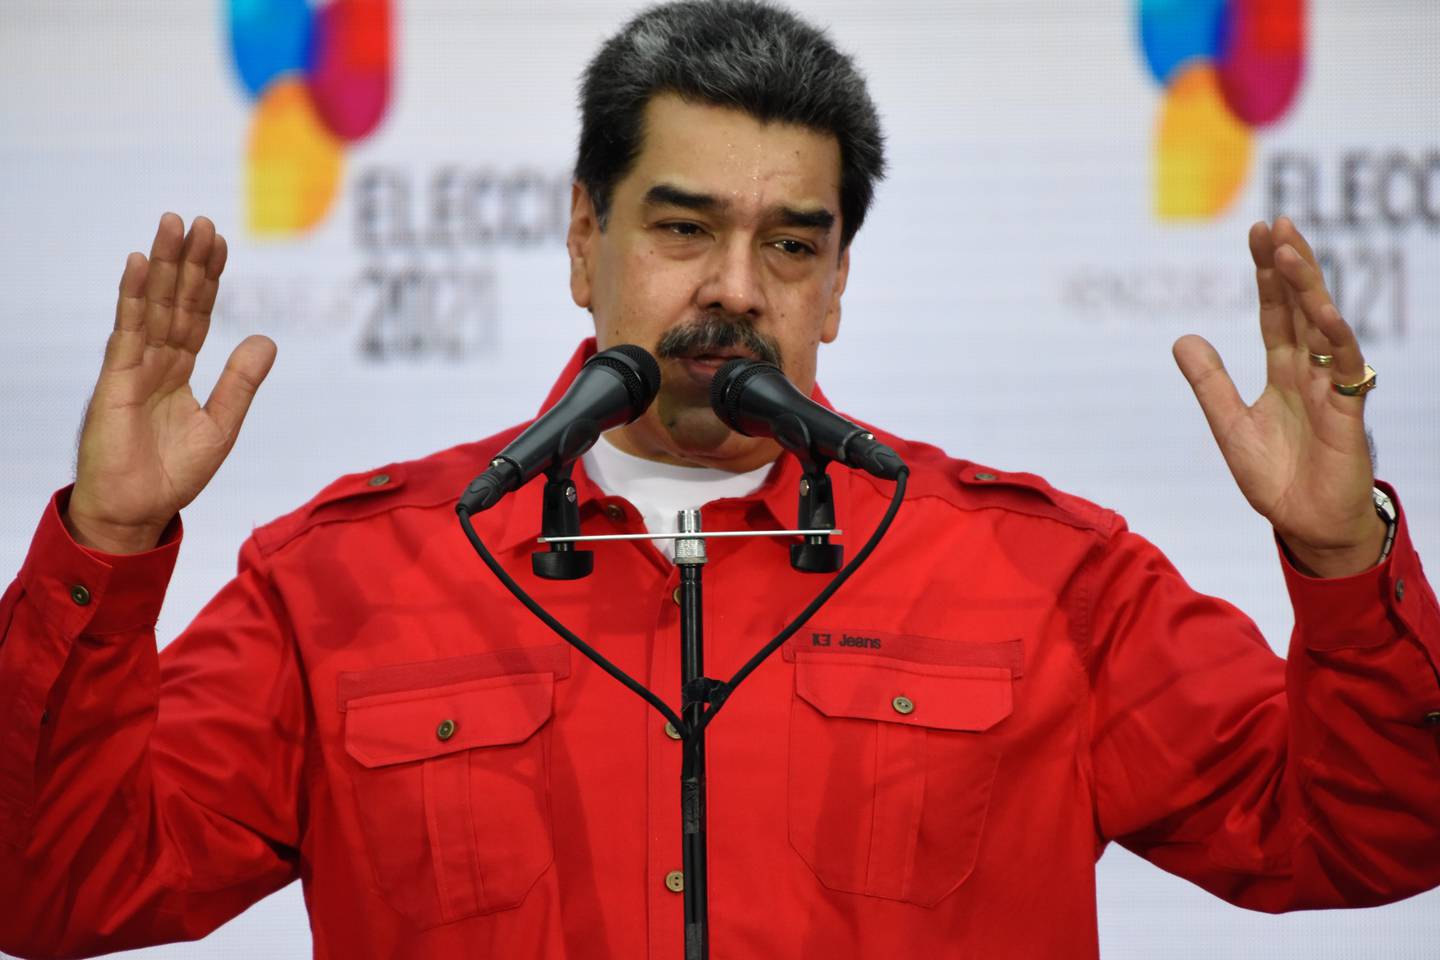 El Centro Center cuestionó el comicio venezolano que dio como ganador al partido del presidente Nicolás Maduro Fotógrafo: Carolina Cabral / Bloomberg